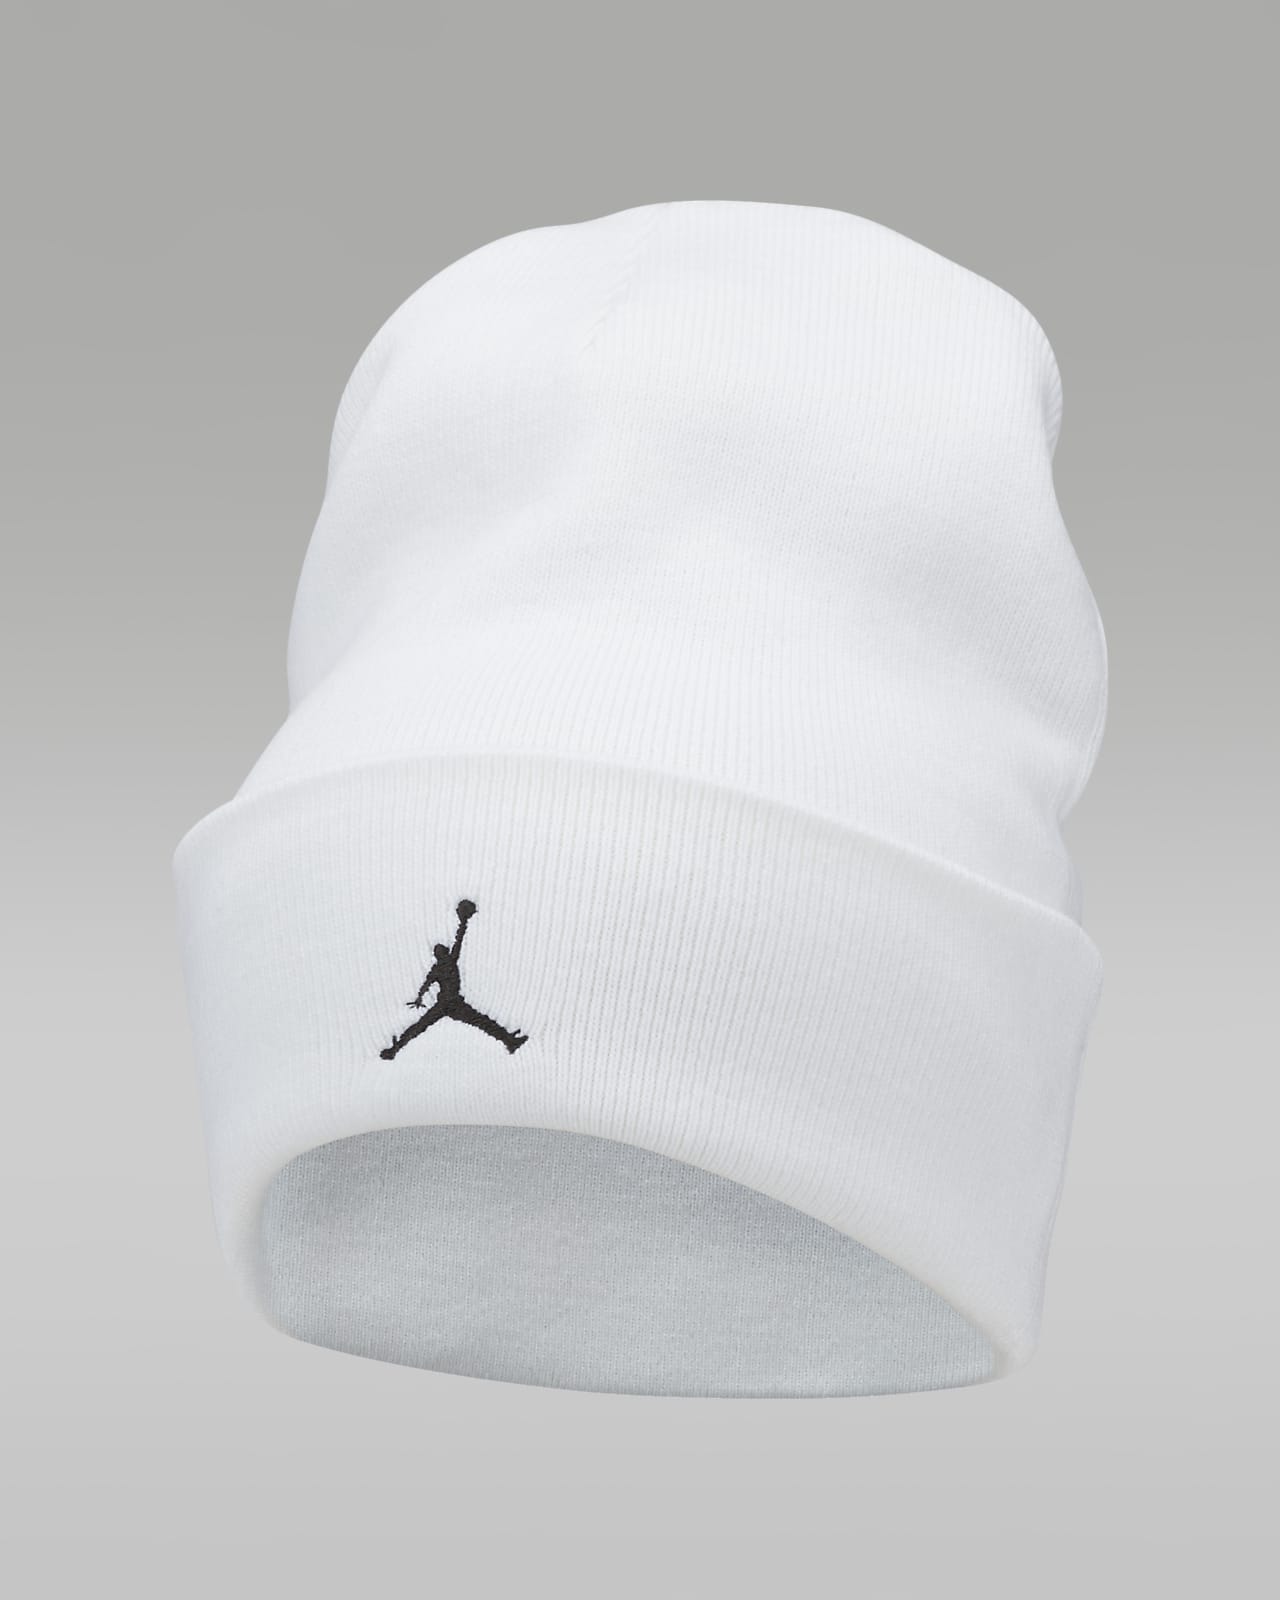 Bonnet Jordan Peak Essential. Nike LU